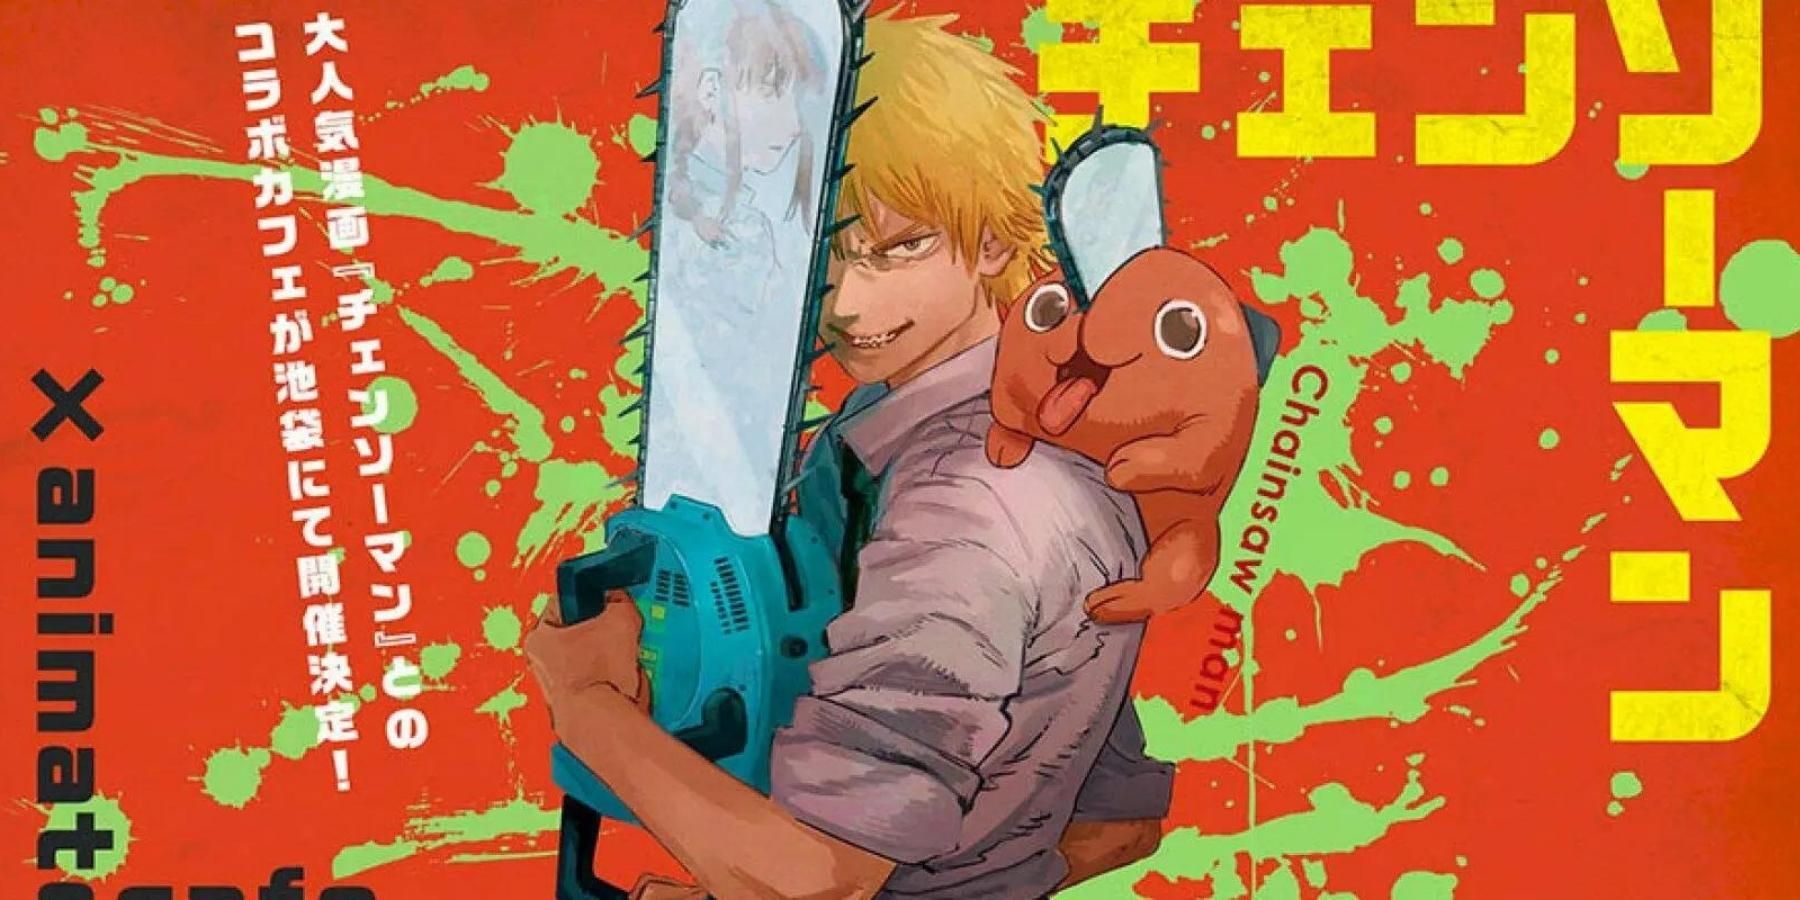 Chainsaw Man  Manga 